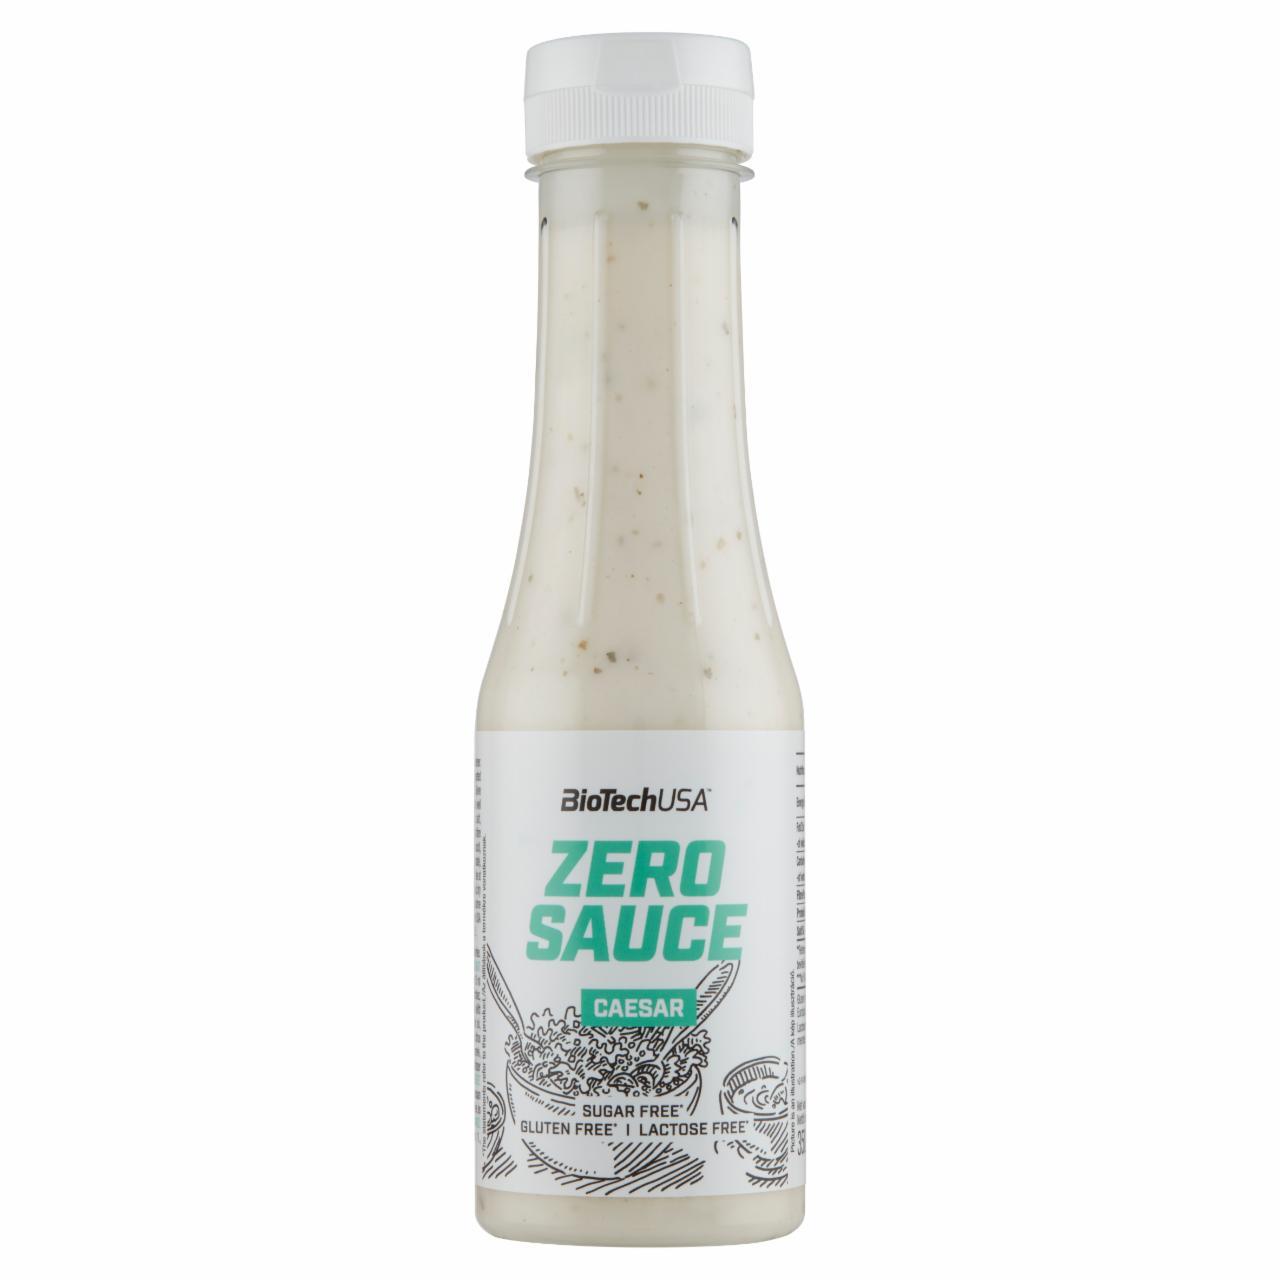 Képek - BioTechUSA Zero Sauce Caesar öntet édesítőszerrel 350 ml